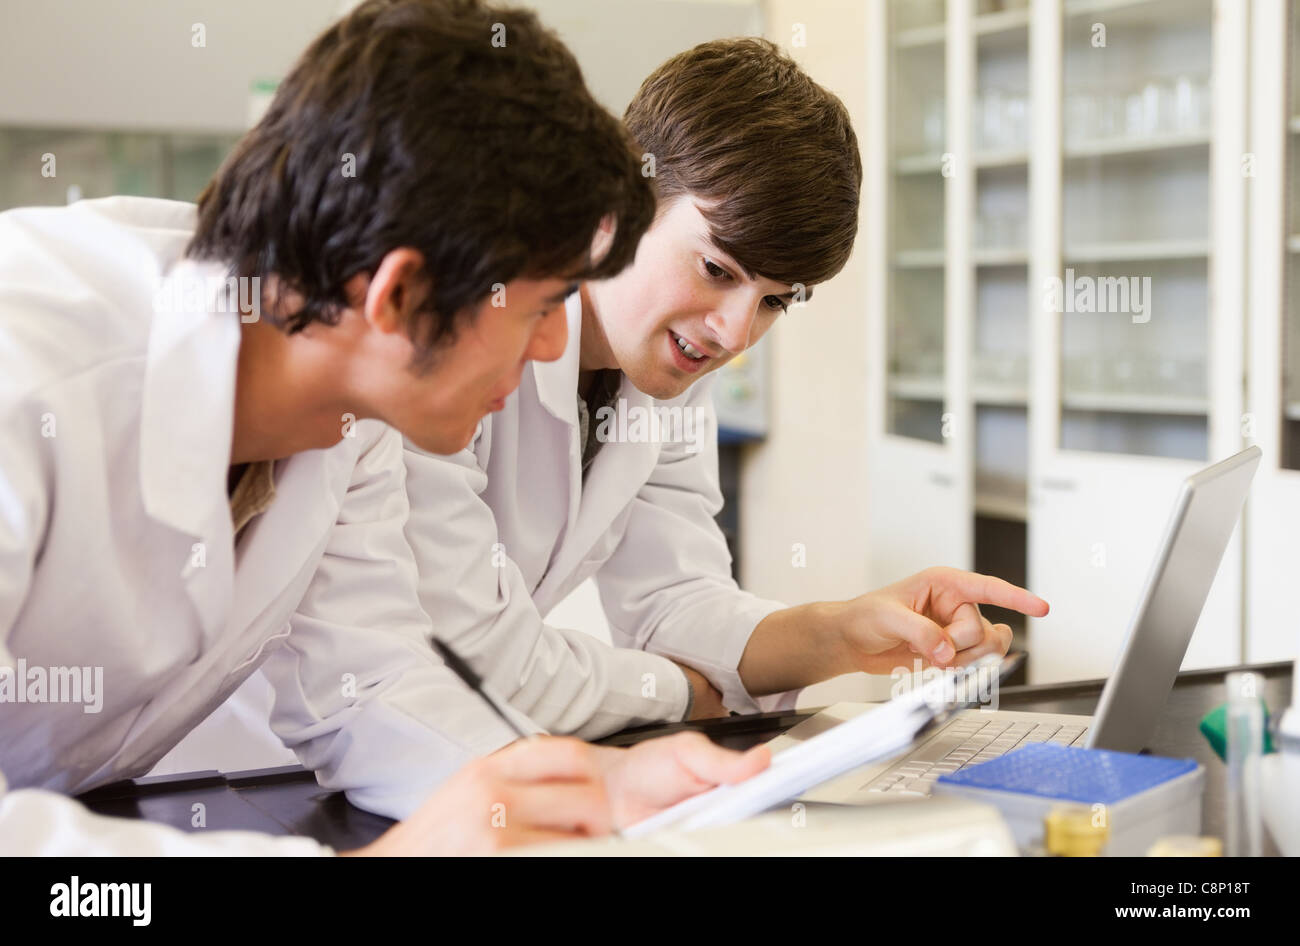 Smiling étudiants en chimie l'écriture d'un rapport Banque D'Images